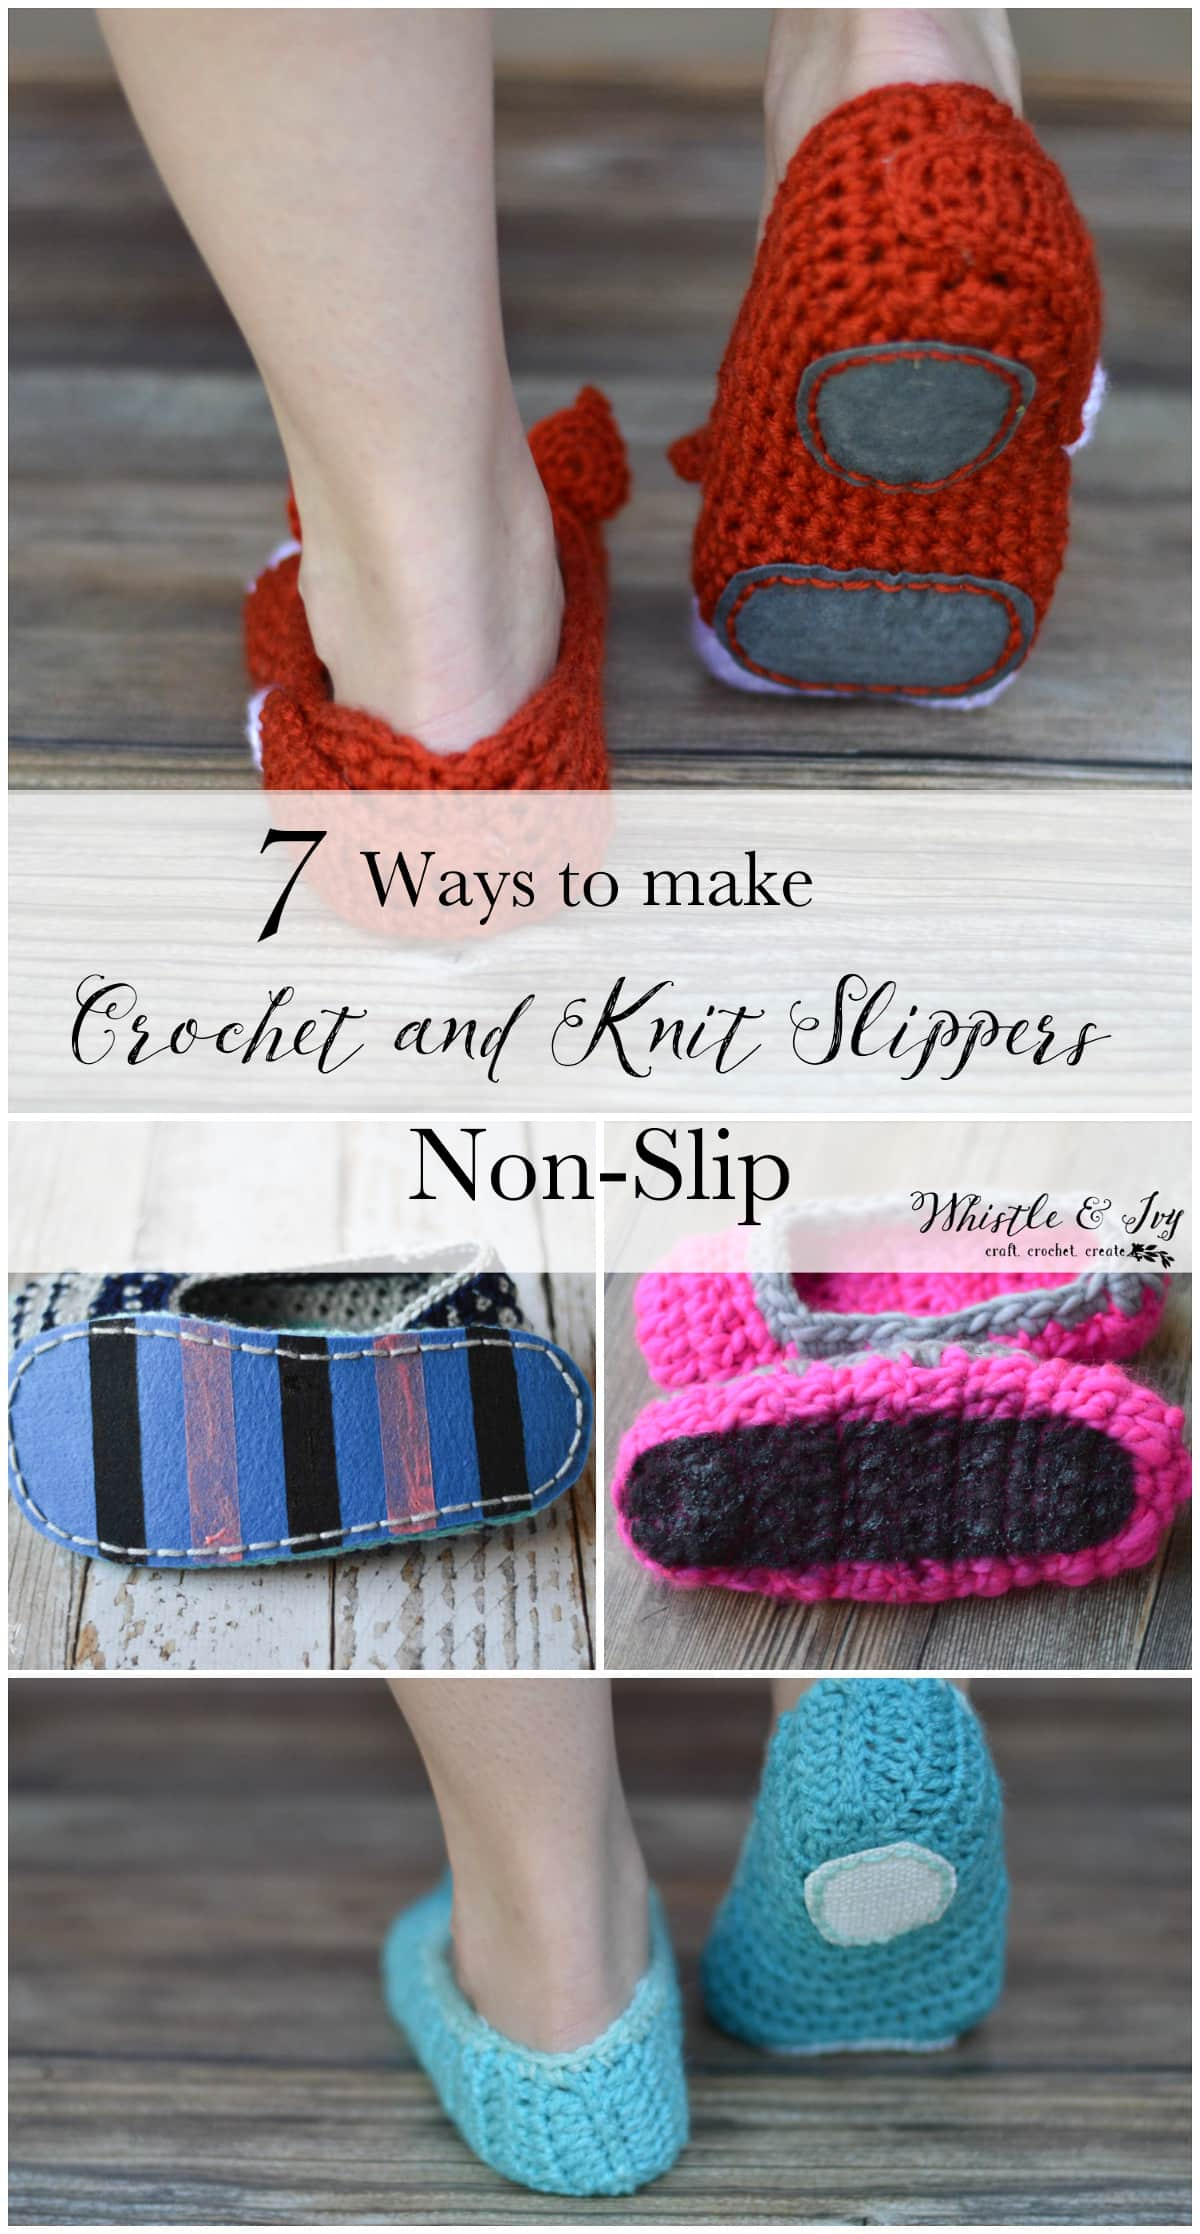 Easy Bed Socks Crochet Pattern How To Make Crochet Slippers Non Slip 7 Tested Non Slip Methods